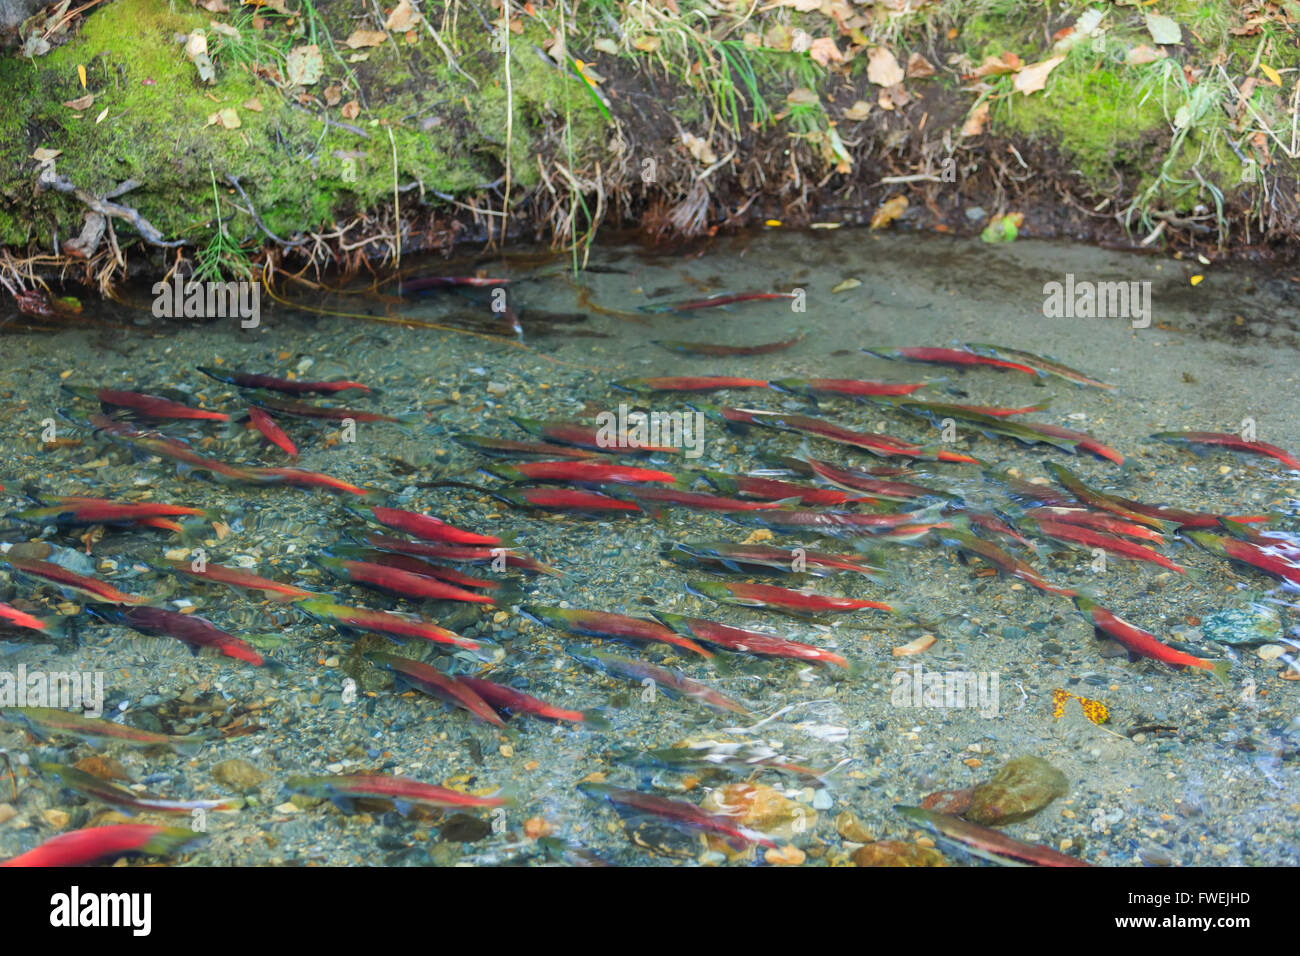 Salmon swimming back, Photos Taken in Lake Tahoe Area Stock Photo